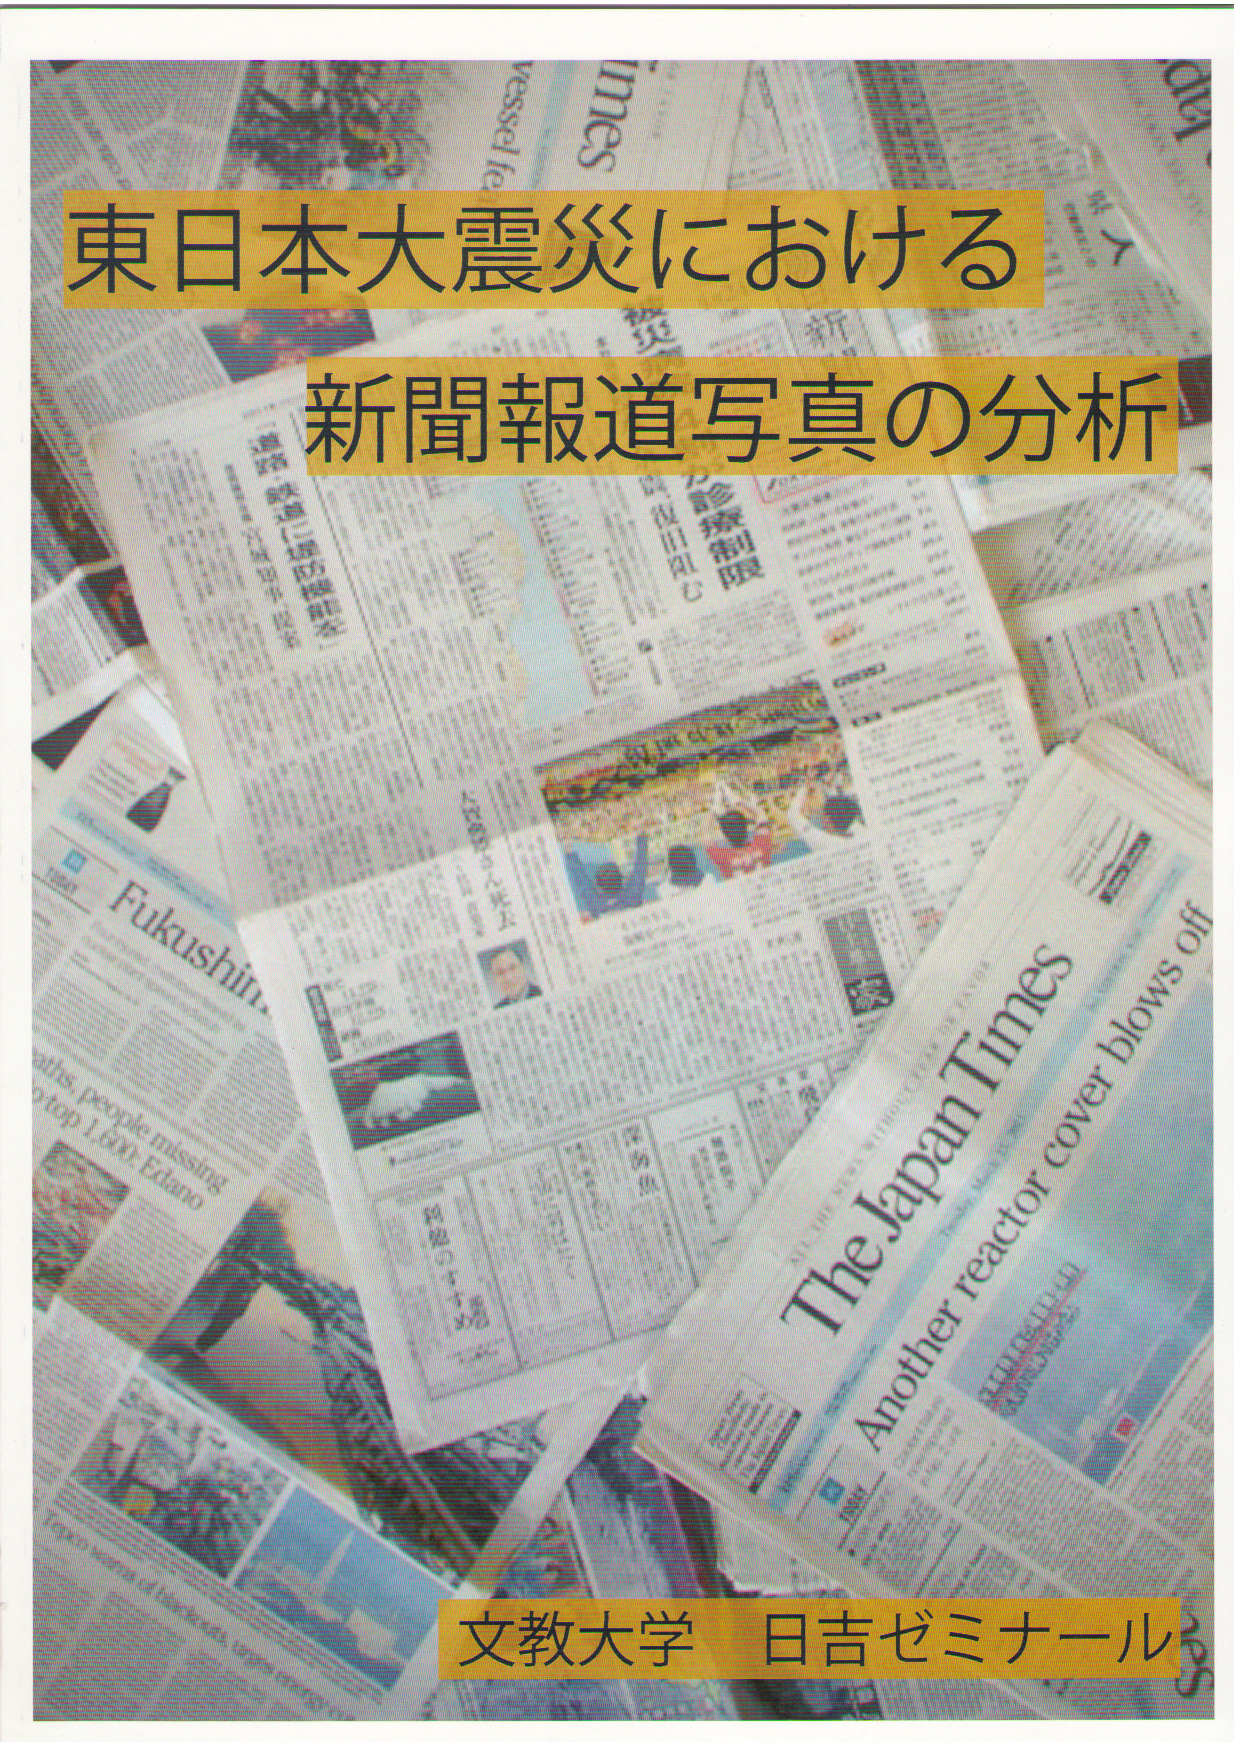 東日本大震災における放送関連の動き